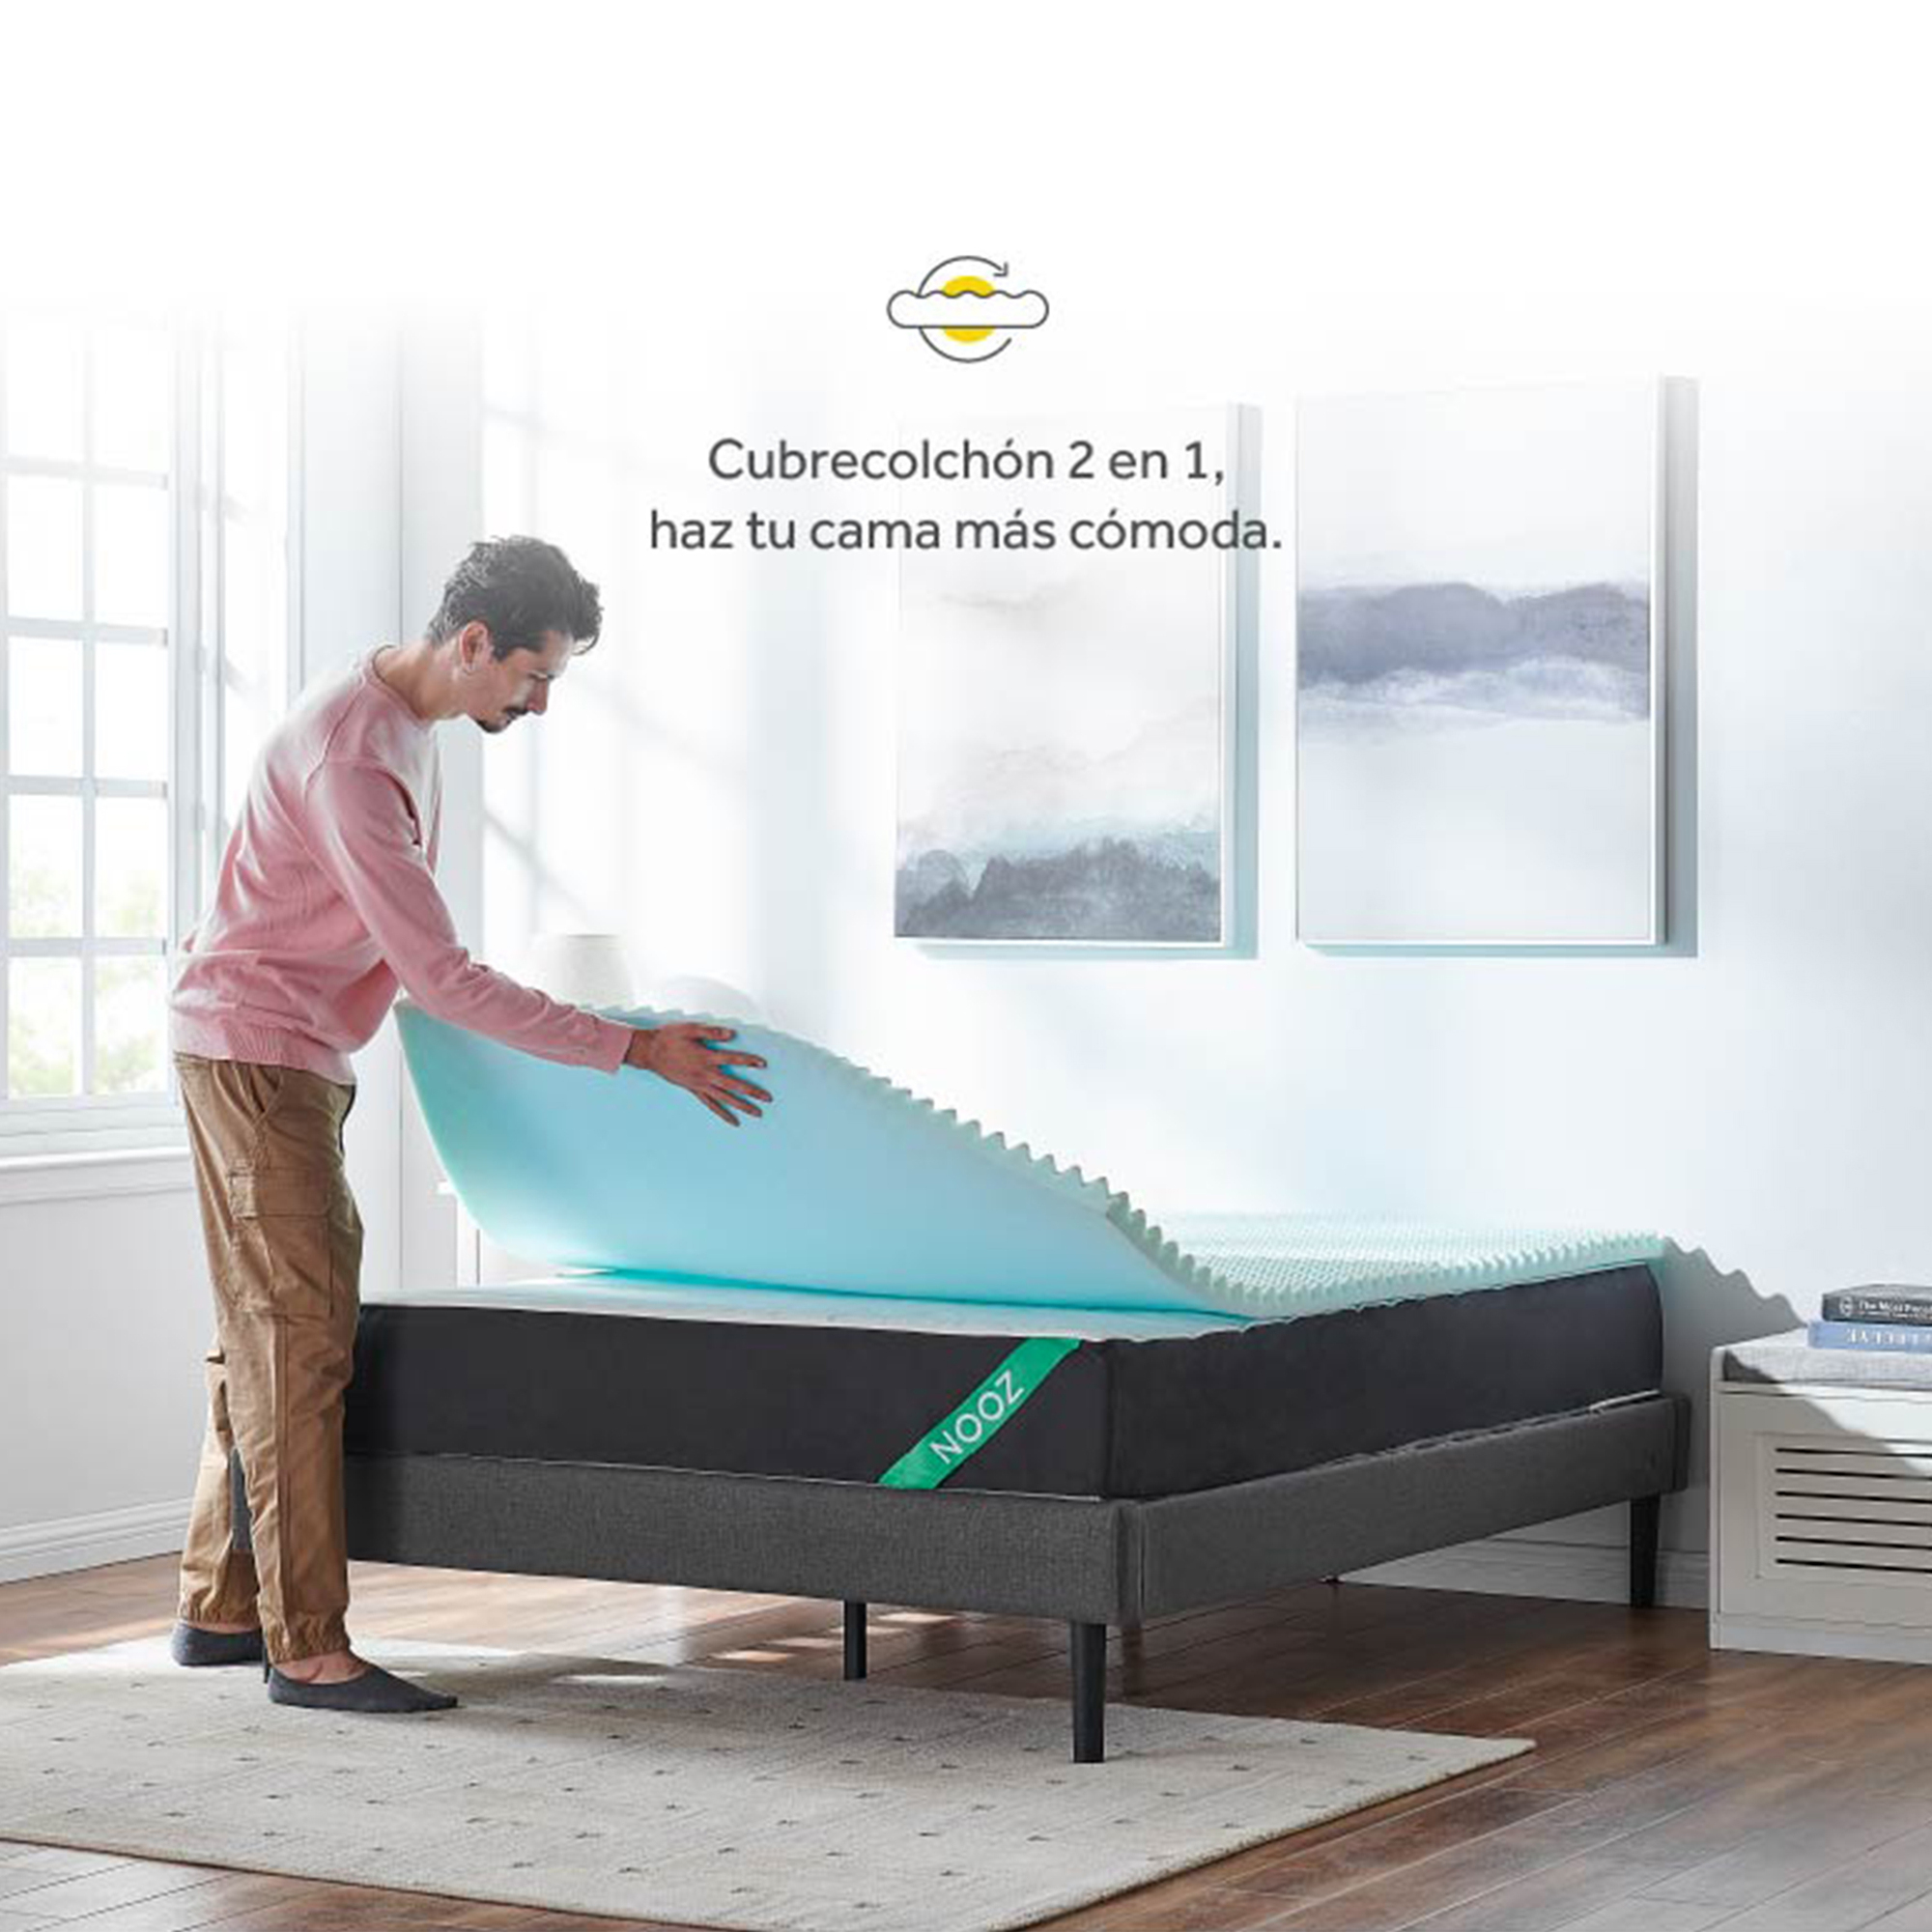 Cubre colchón Nooz Dual Confort, espuma de alta densidad